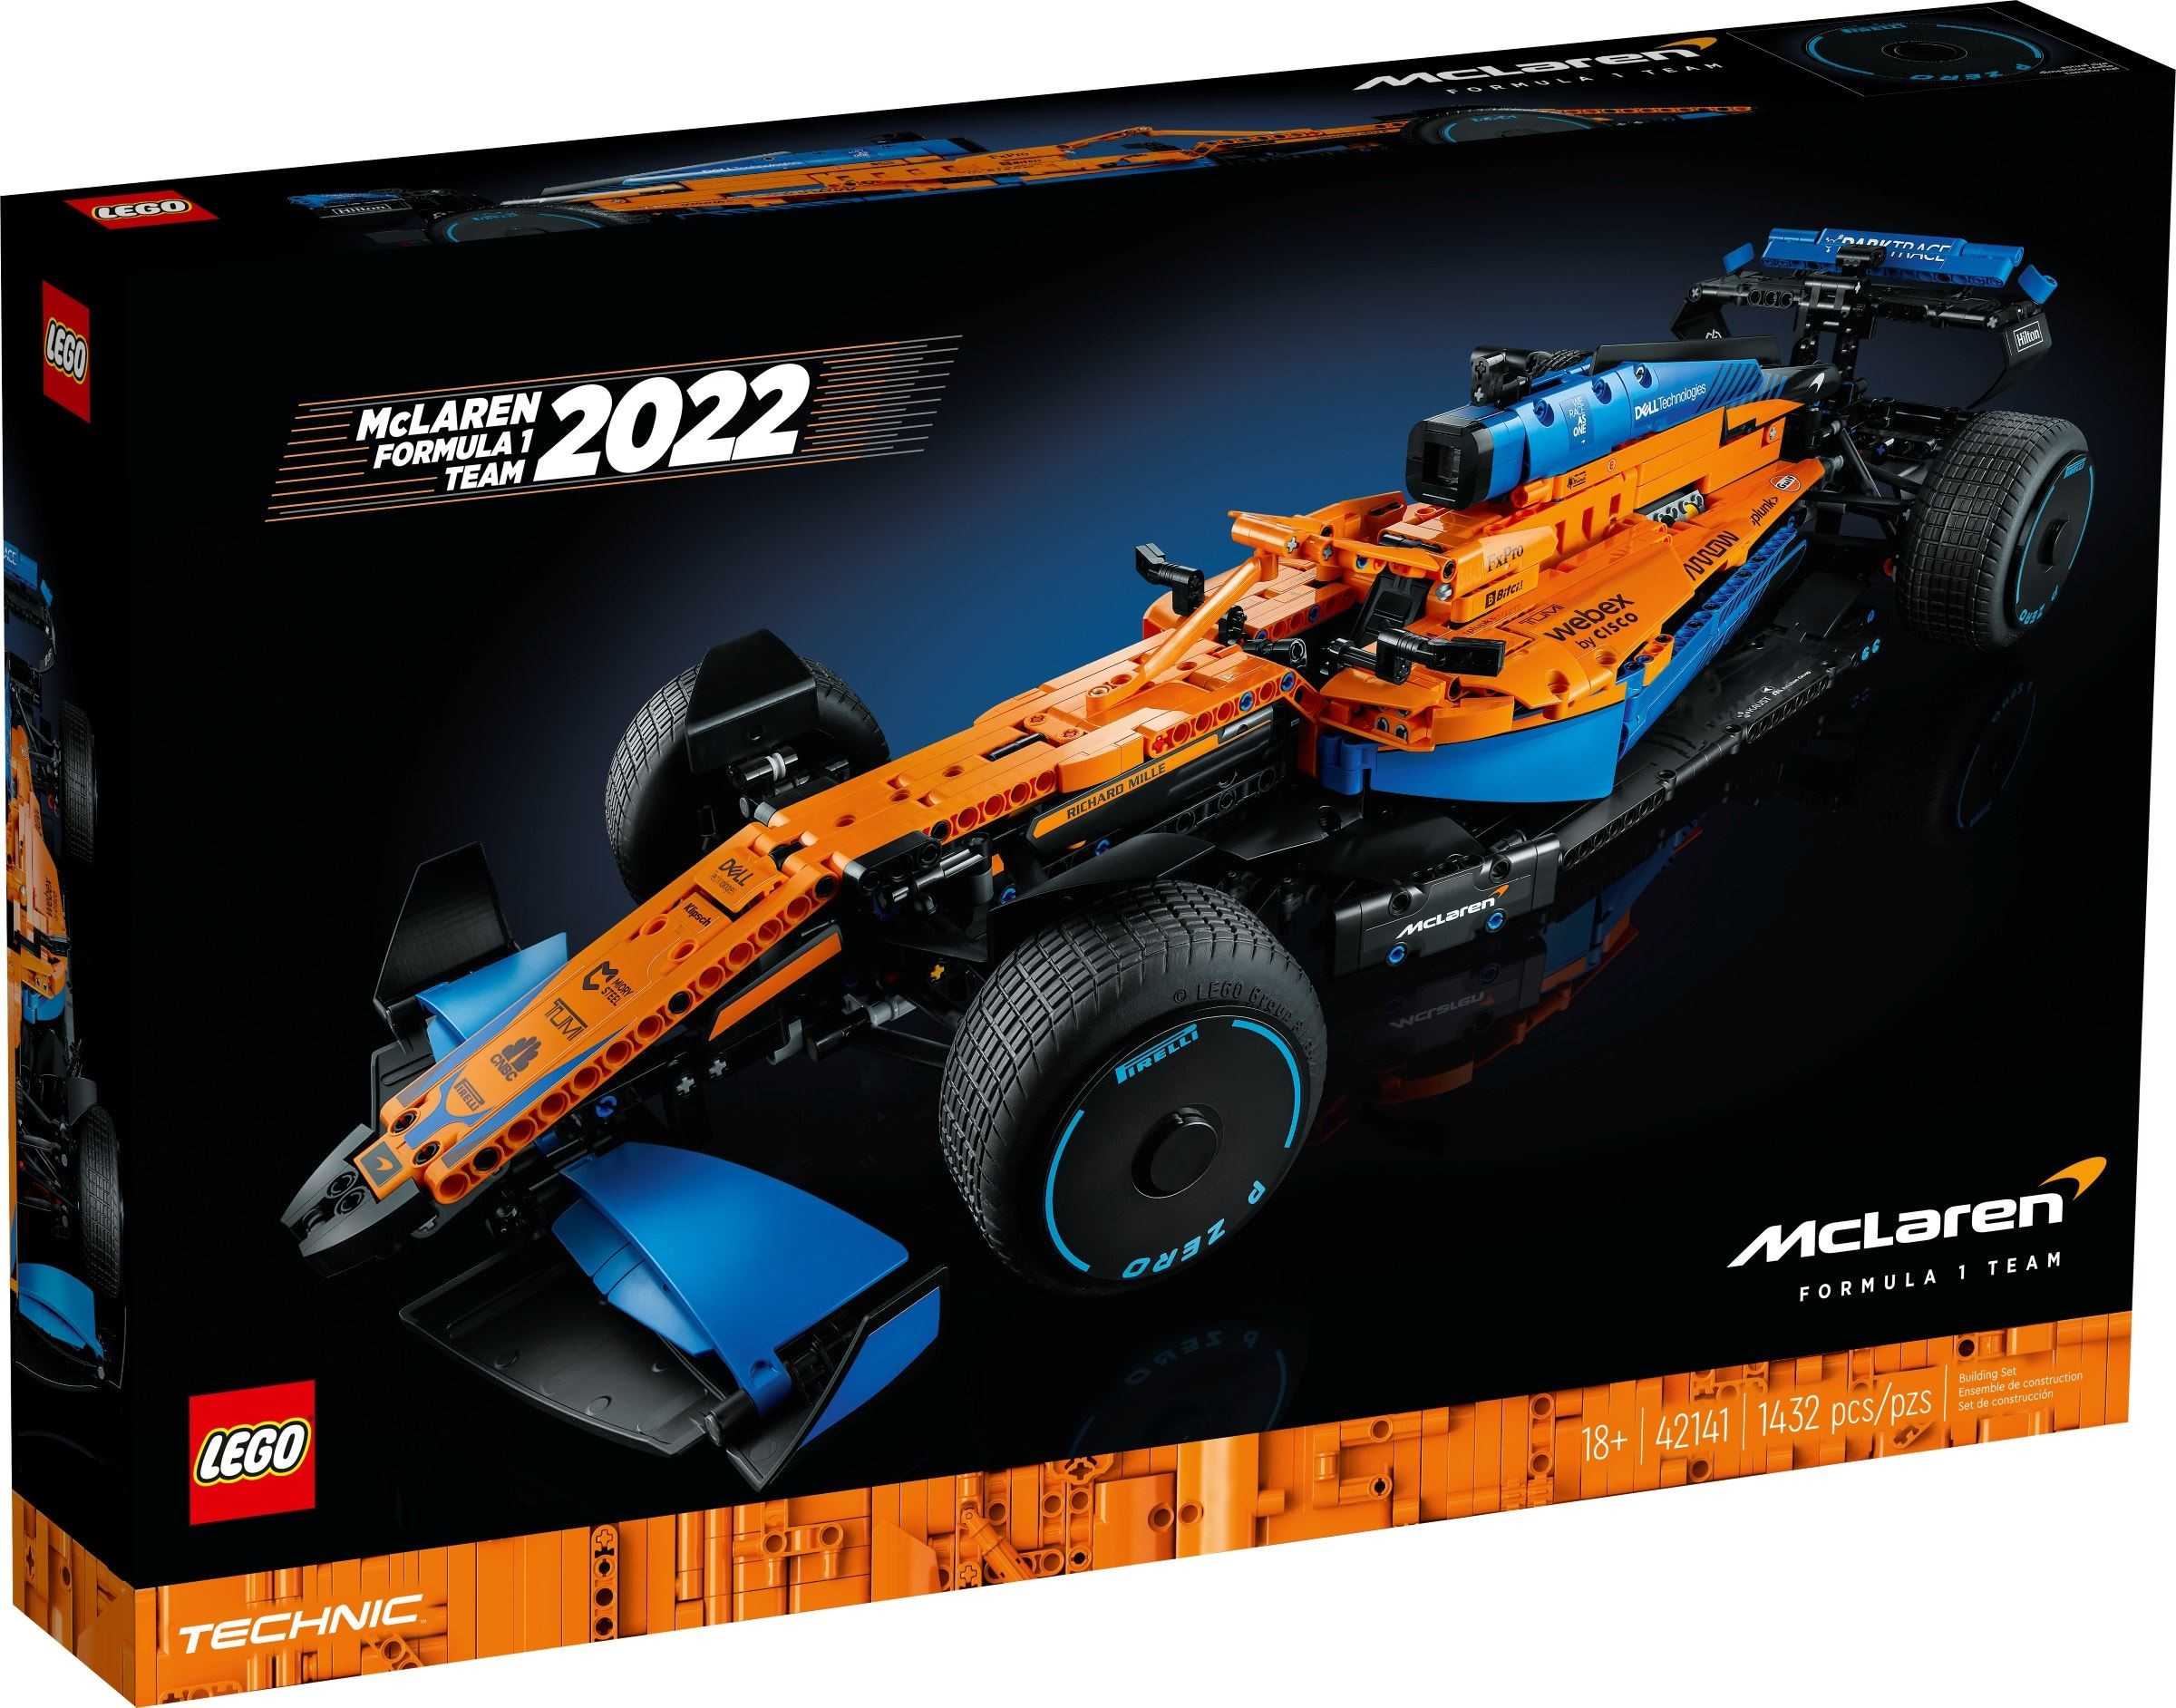 【電積系@北投】LEGO42141 麥拉倫一級方程式賽車 McLaren Formula 1